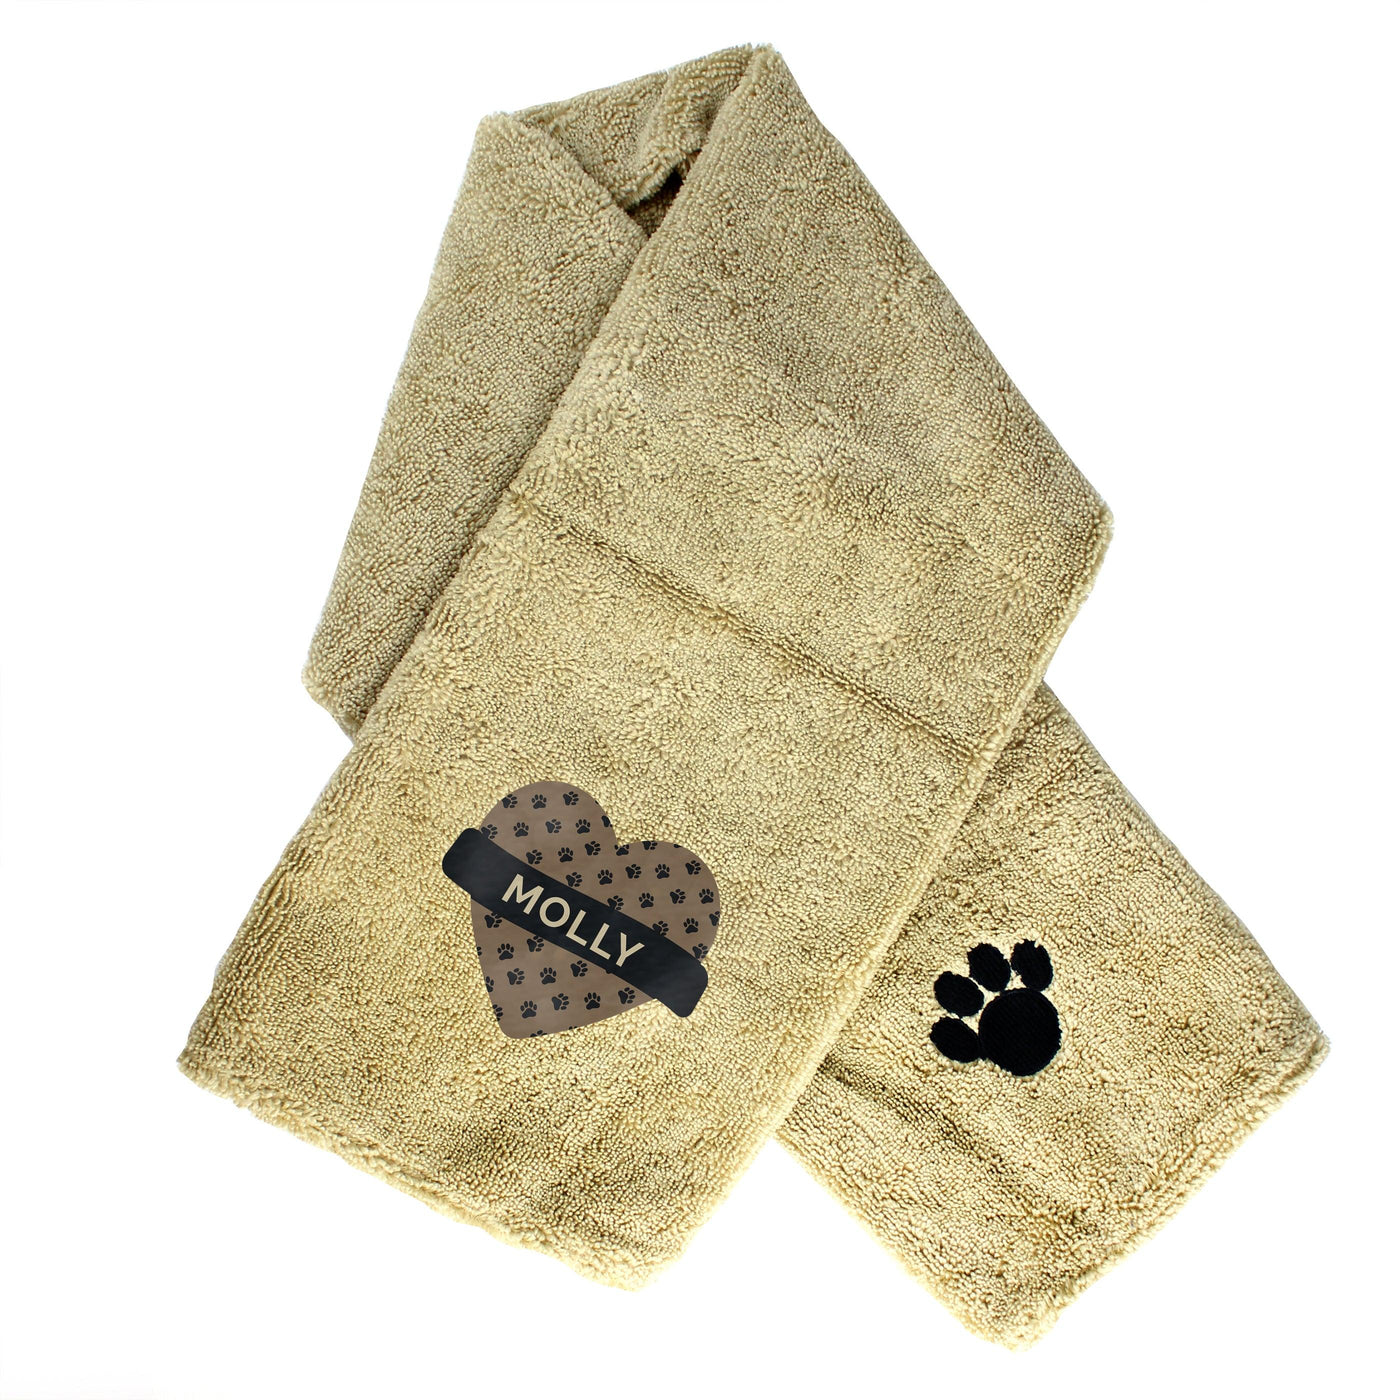 Personalised Heart Brown Microfiber Pet Towel - Shop Personalised Gifts